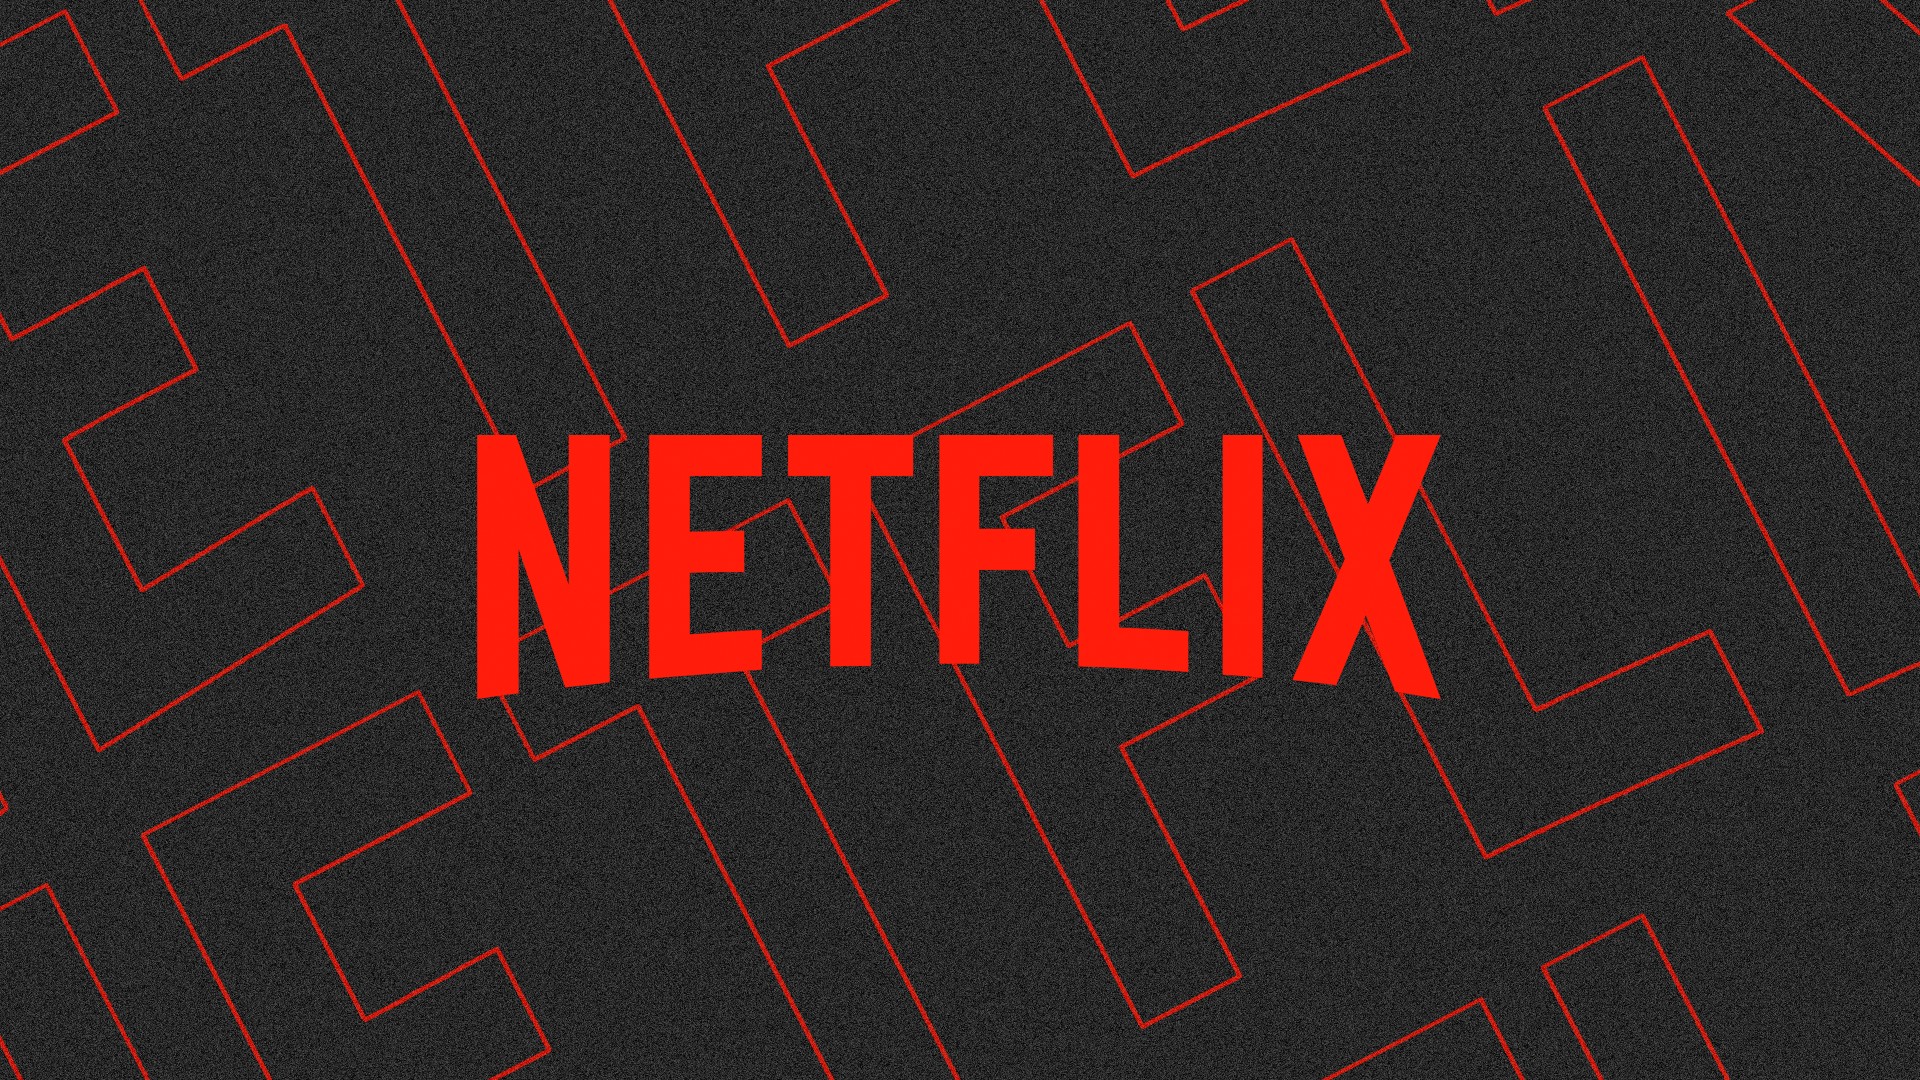 Como mudar a forma de pagamento da Netflix pelo celular